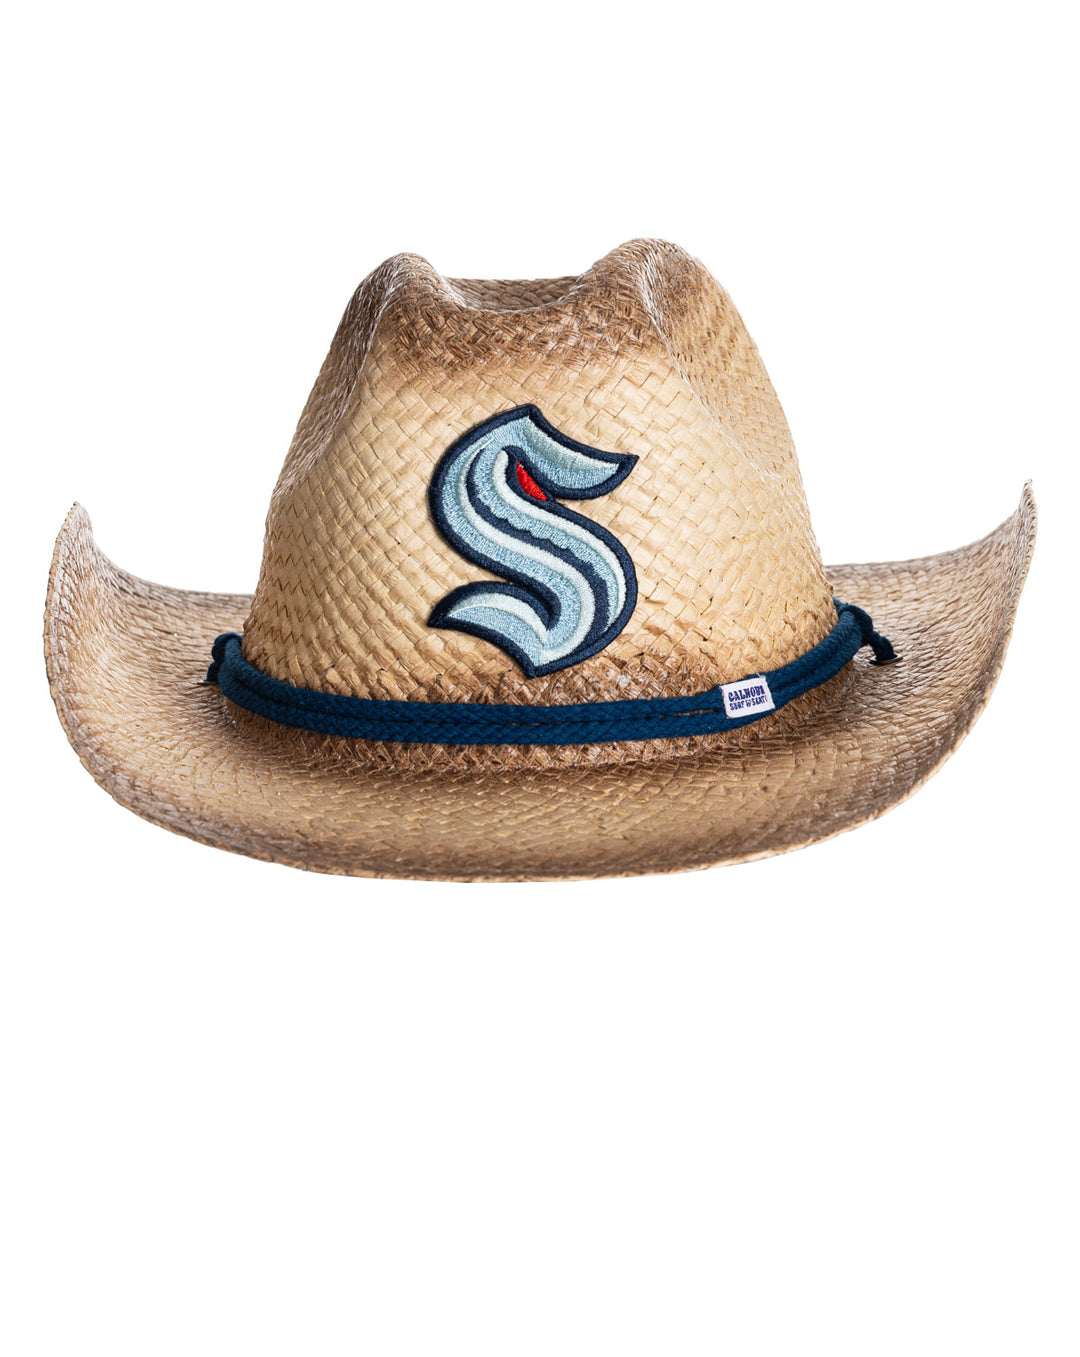 Officially Licensed NHL Seattle Kraken Cowboy Hat